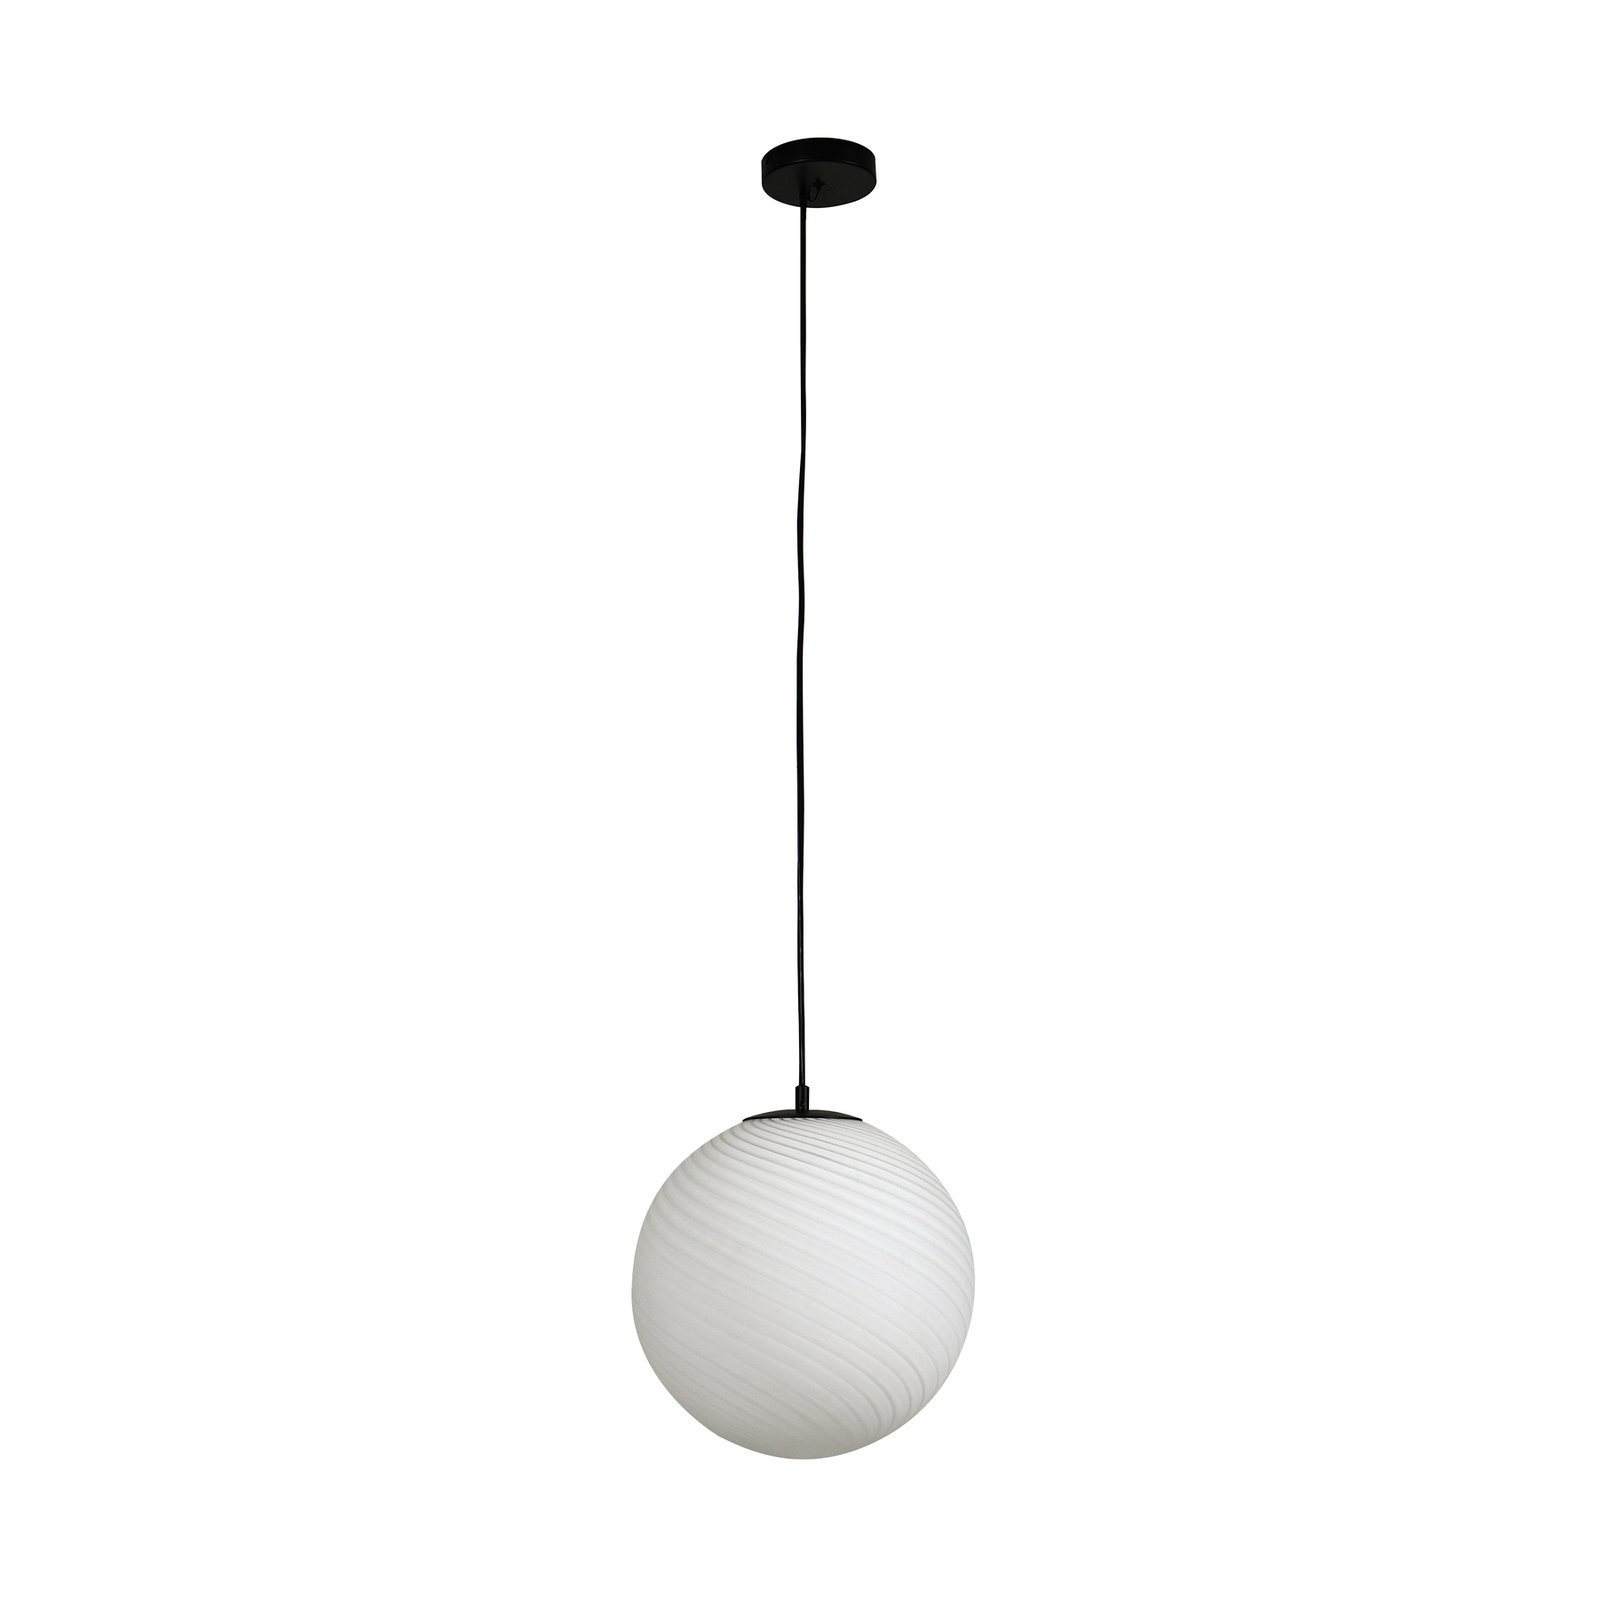 Lucande pendant light Kestralia, white, glass, Ø 36.8 cm, E27